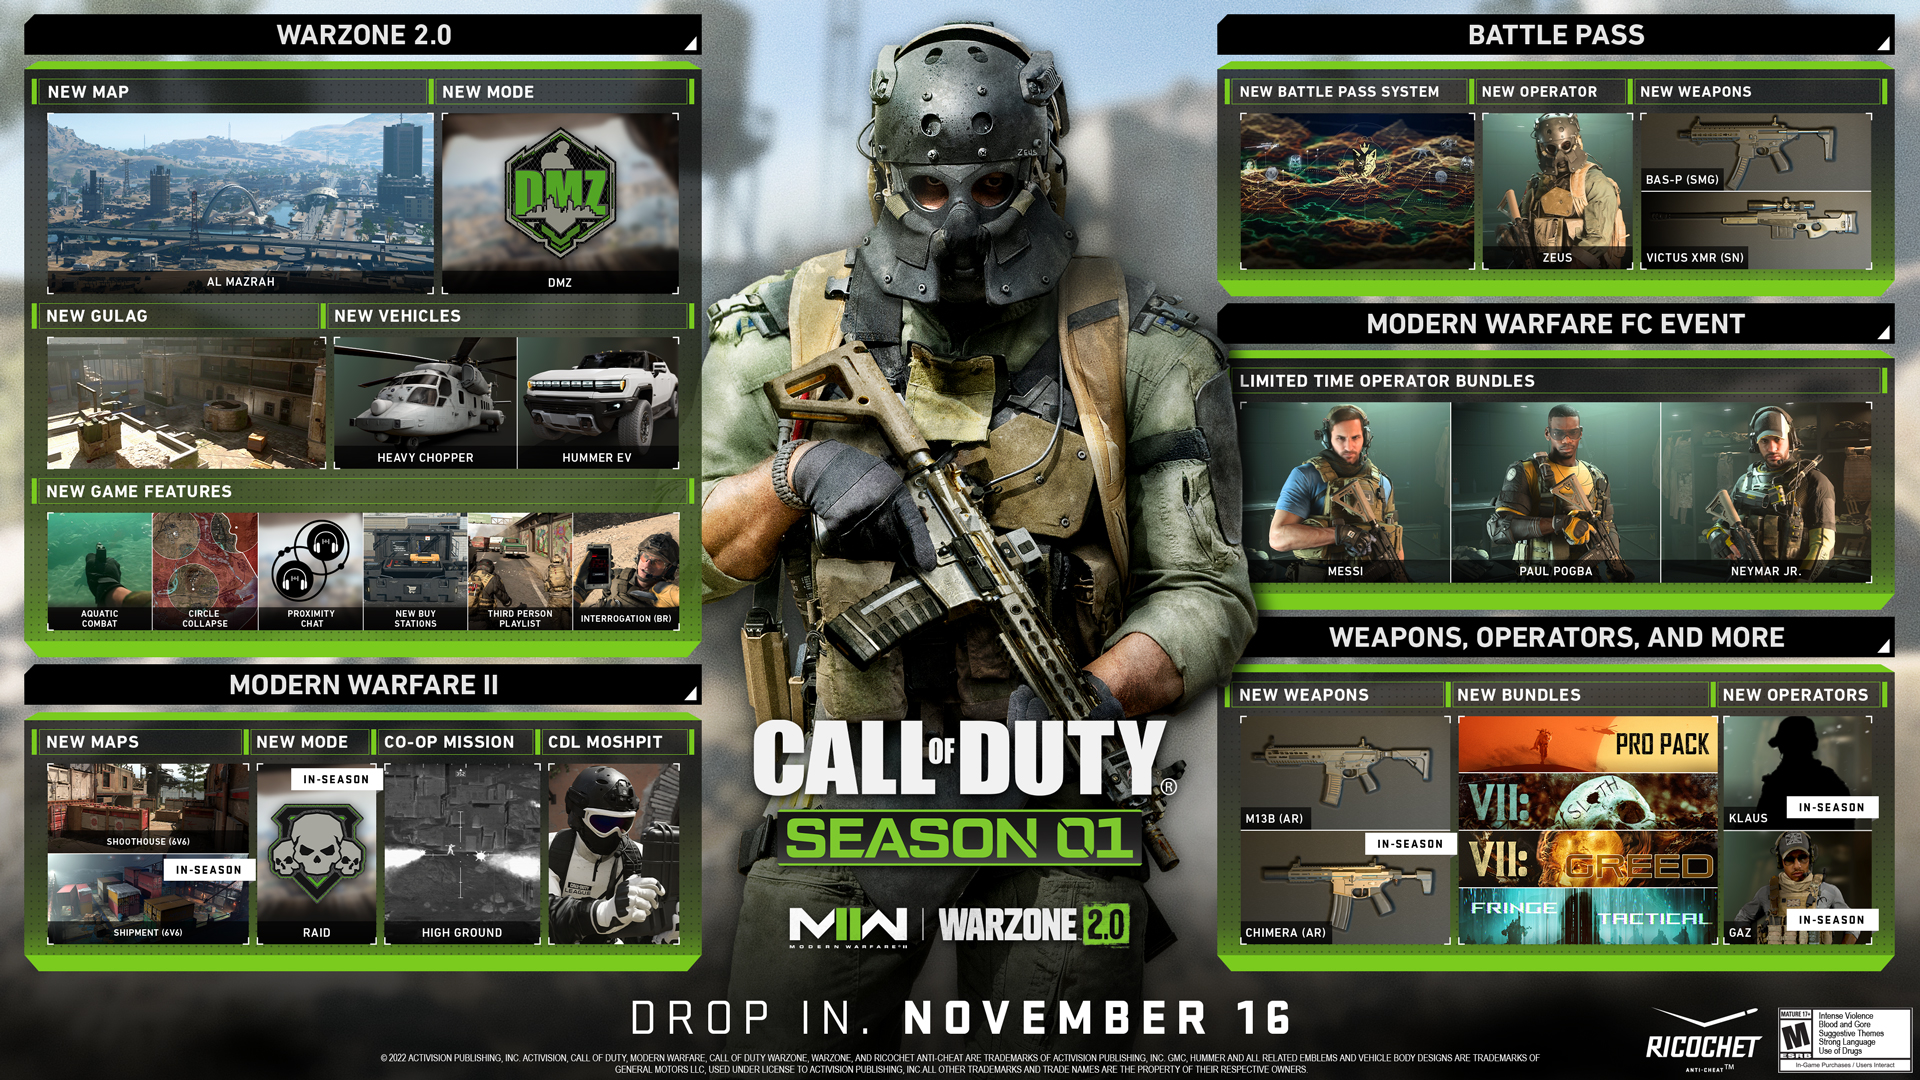 Fahrplan der ersten Saison von Call of Duty: Modern Warfare II